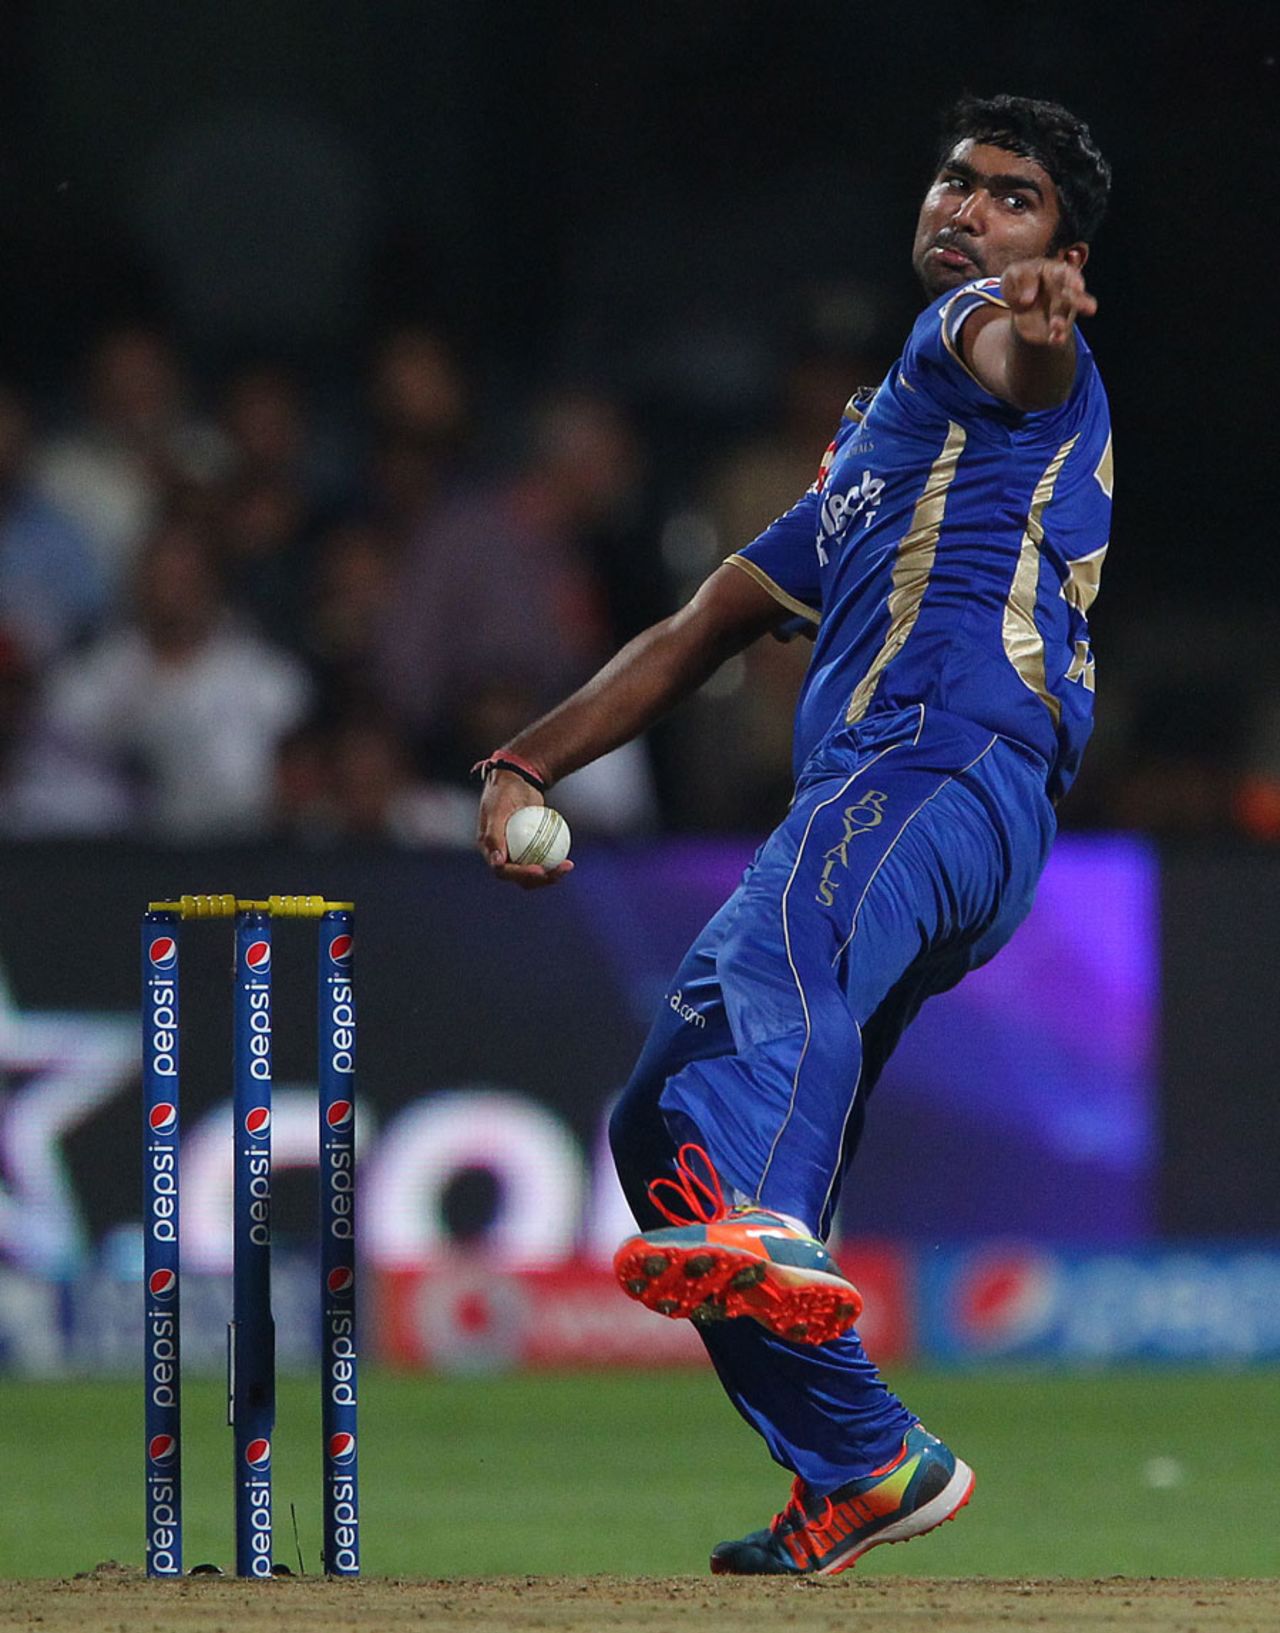 Rahul Tewatia has a bowl, Royal Challengers Bangalore v Rajasthan Royals, IPL 2014, Bangalore, May 11, 2014